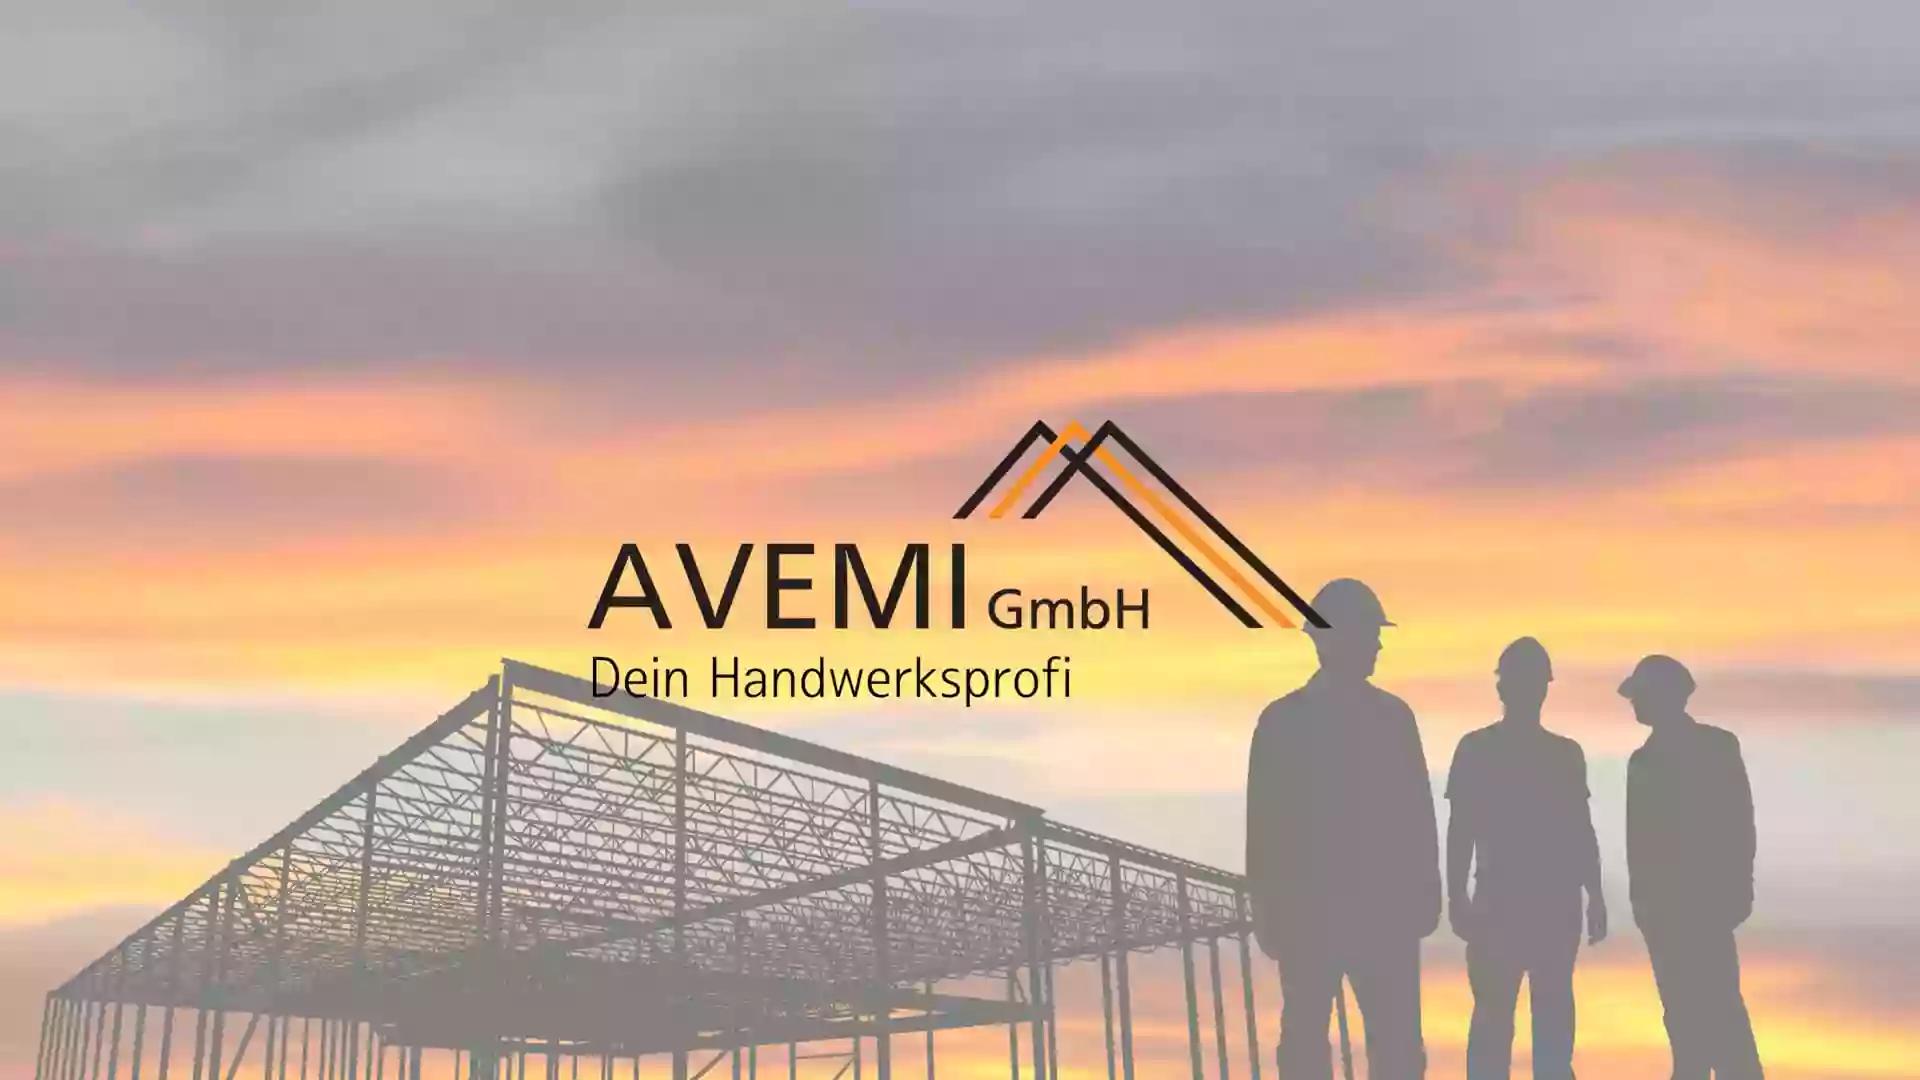 AVEMI GmbH